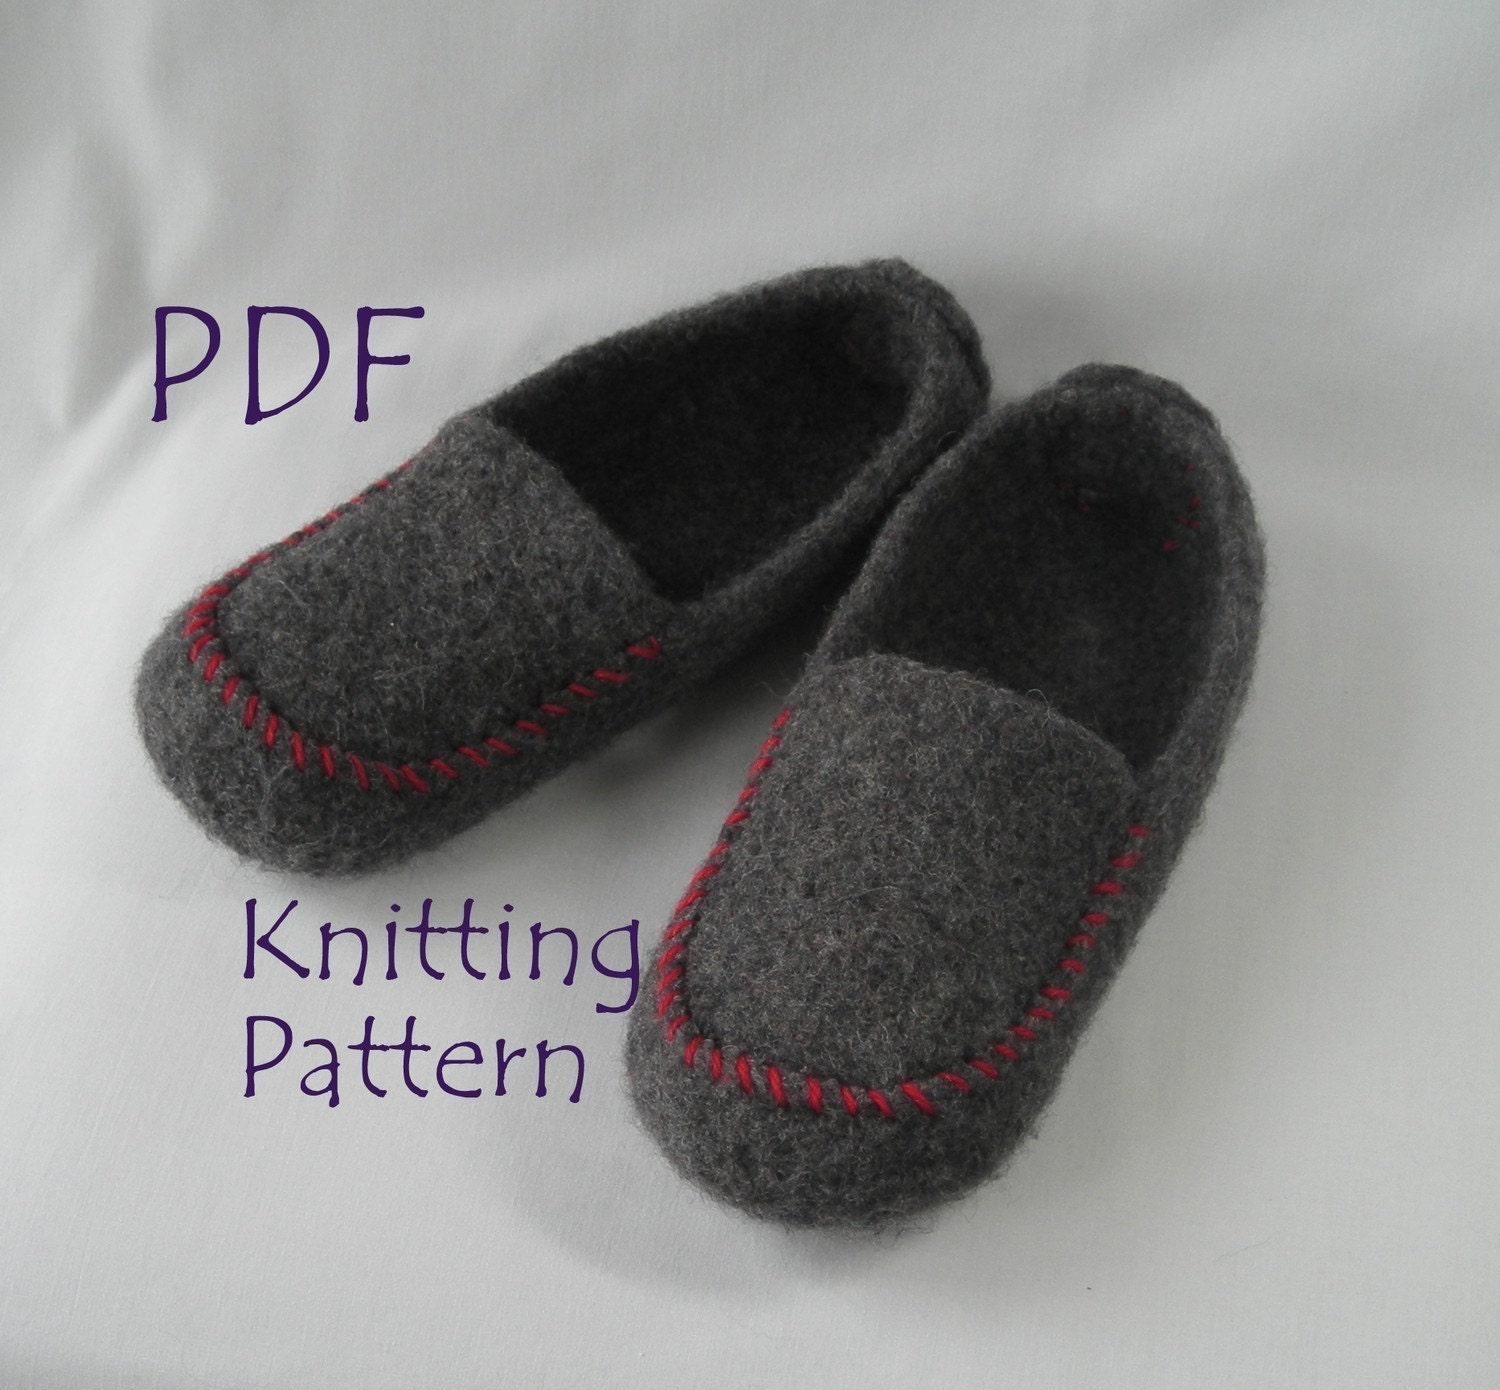 Bulky - ABC Knitting Patterns - Free Knitting and Crochet Patterns